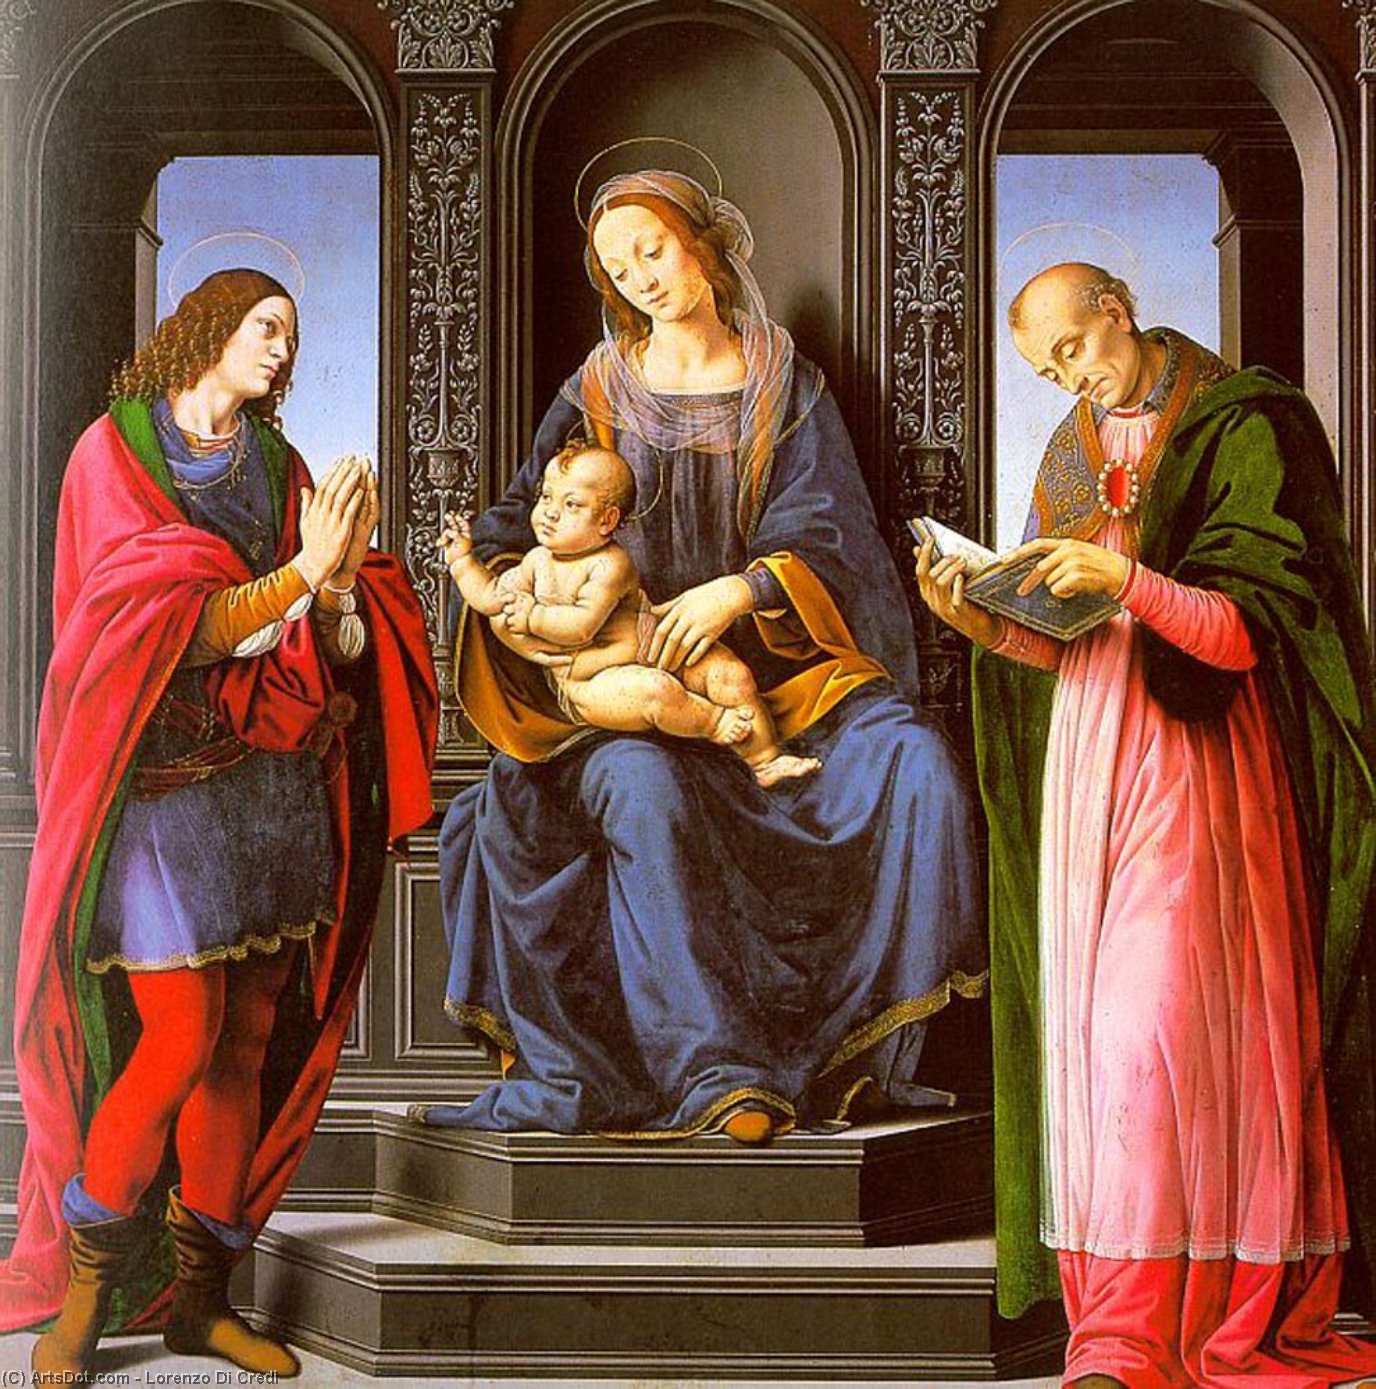 WikiOO.org - Encyclopedia of Fine Arts - Maleri, Artwork Lorenzo Di Credi - Italian, )